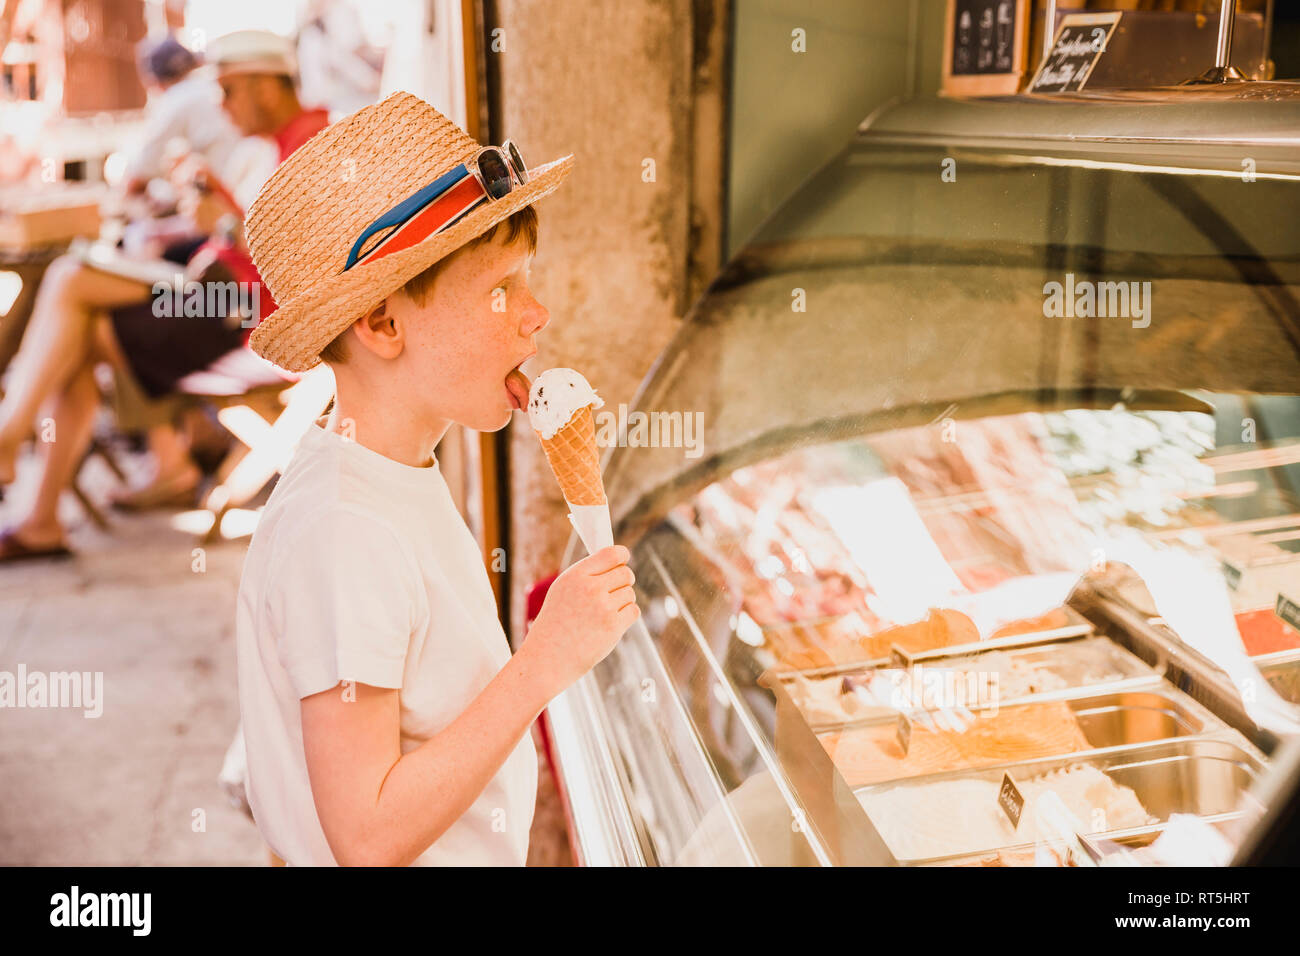 Boy eating ice cream Stock Photo